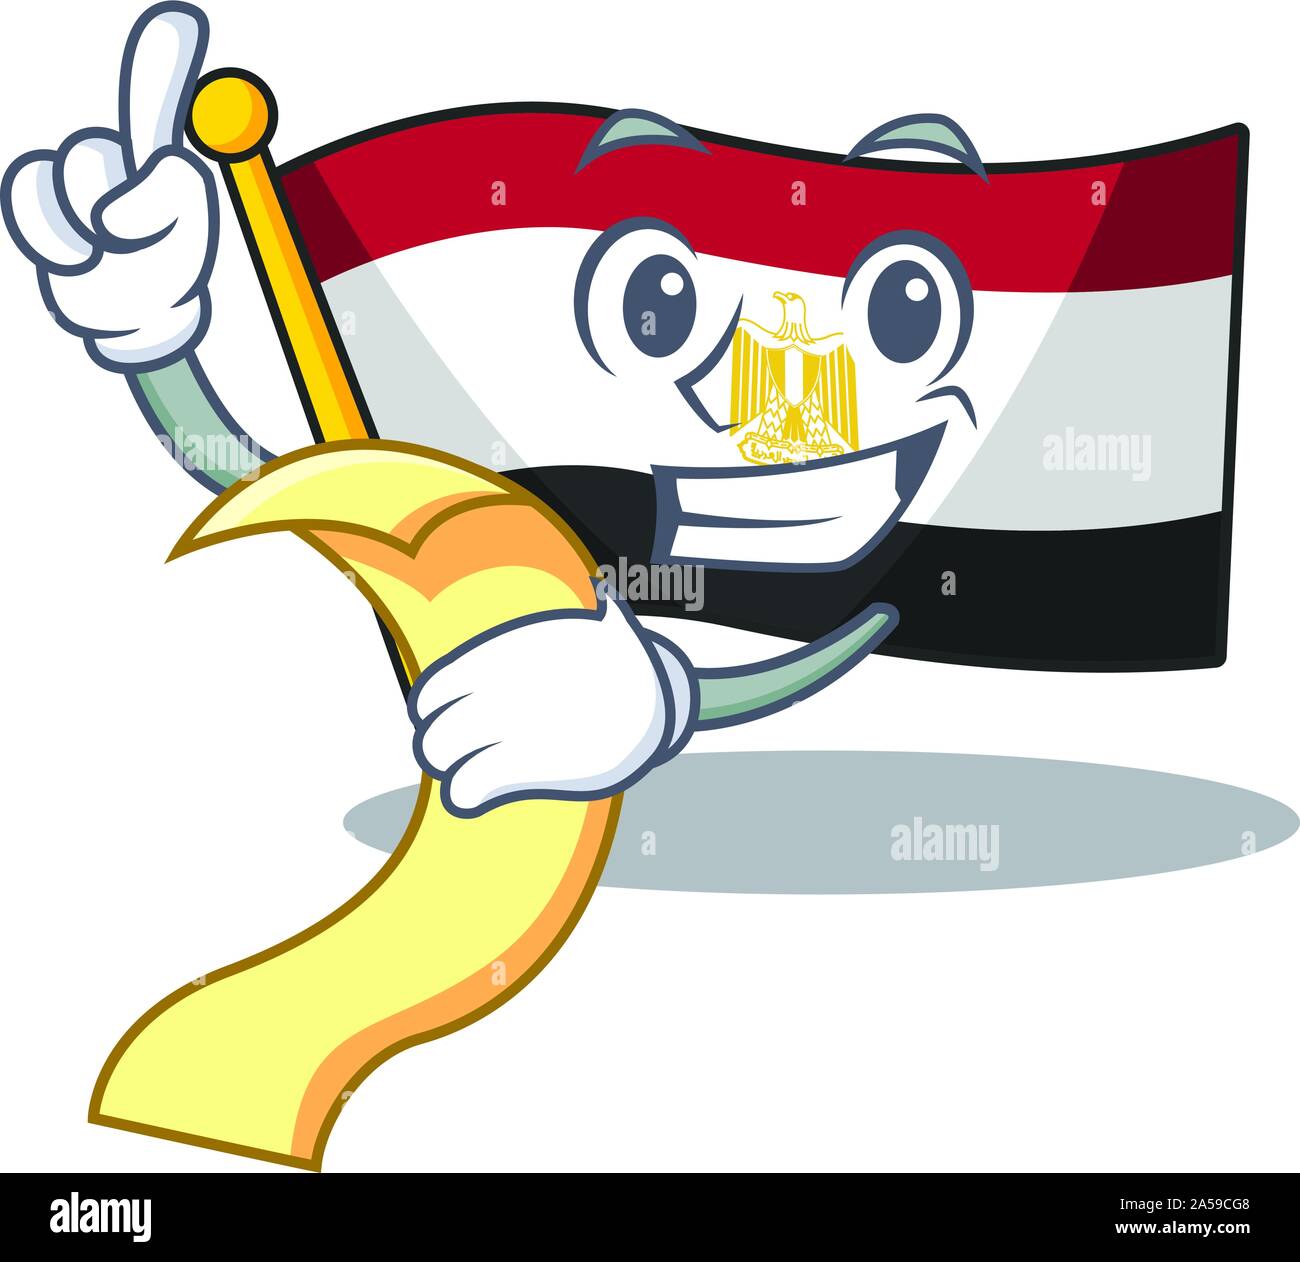 Menu avec l'égypte drapeau plié en mascot placard Illustration de Vecteur